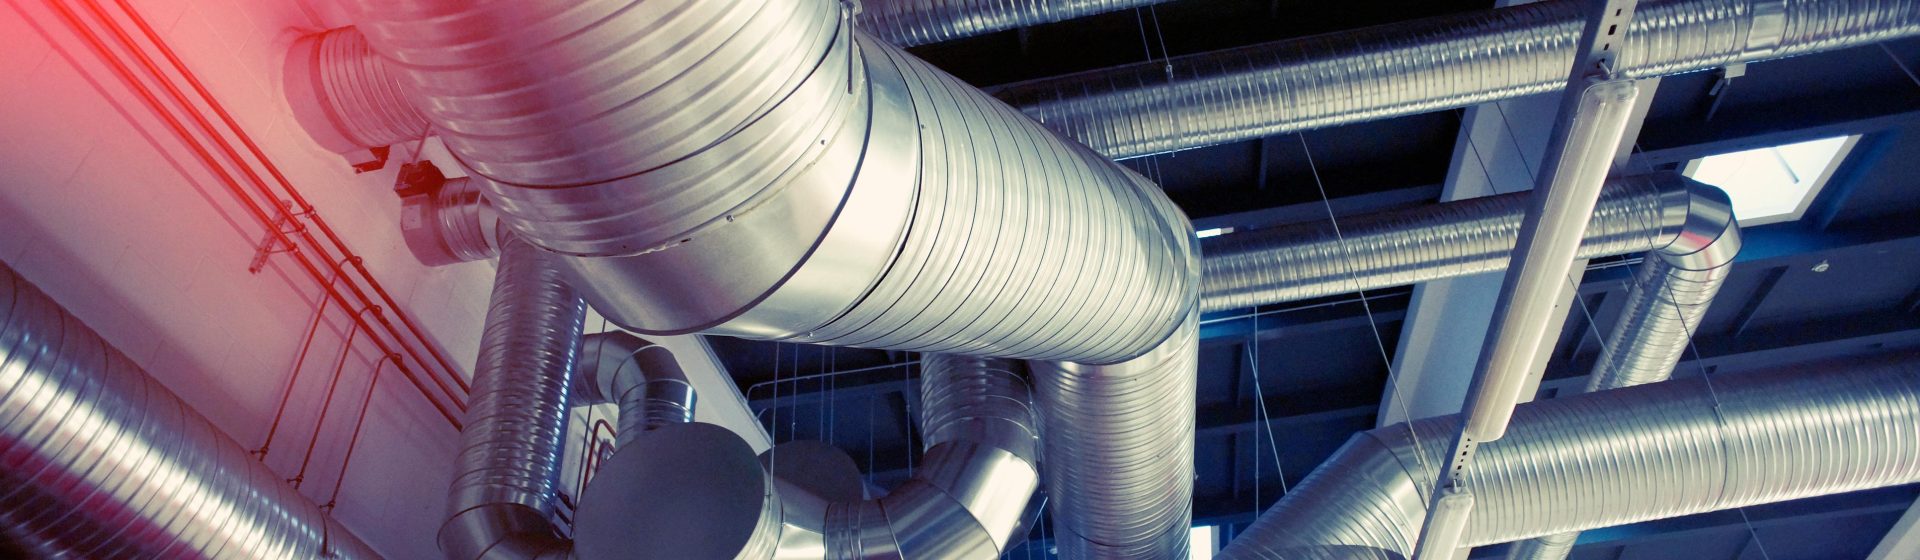 Service de système de ventilation à Aubervilliers – FRH Environnement F.R.H